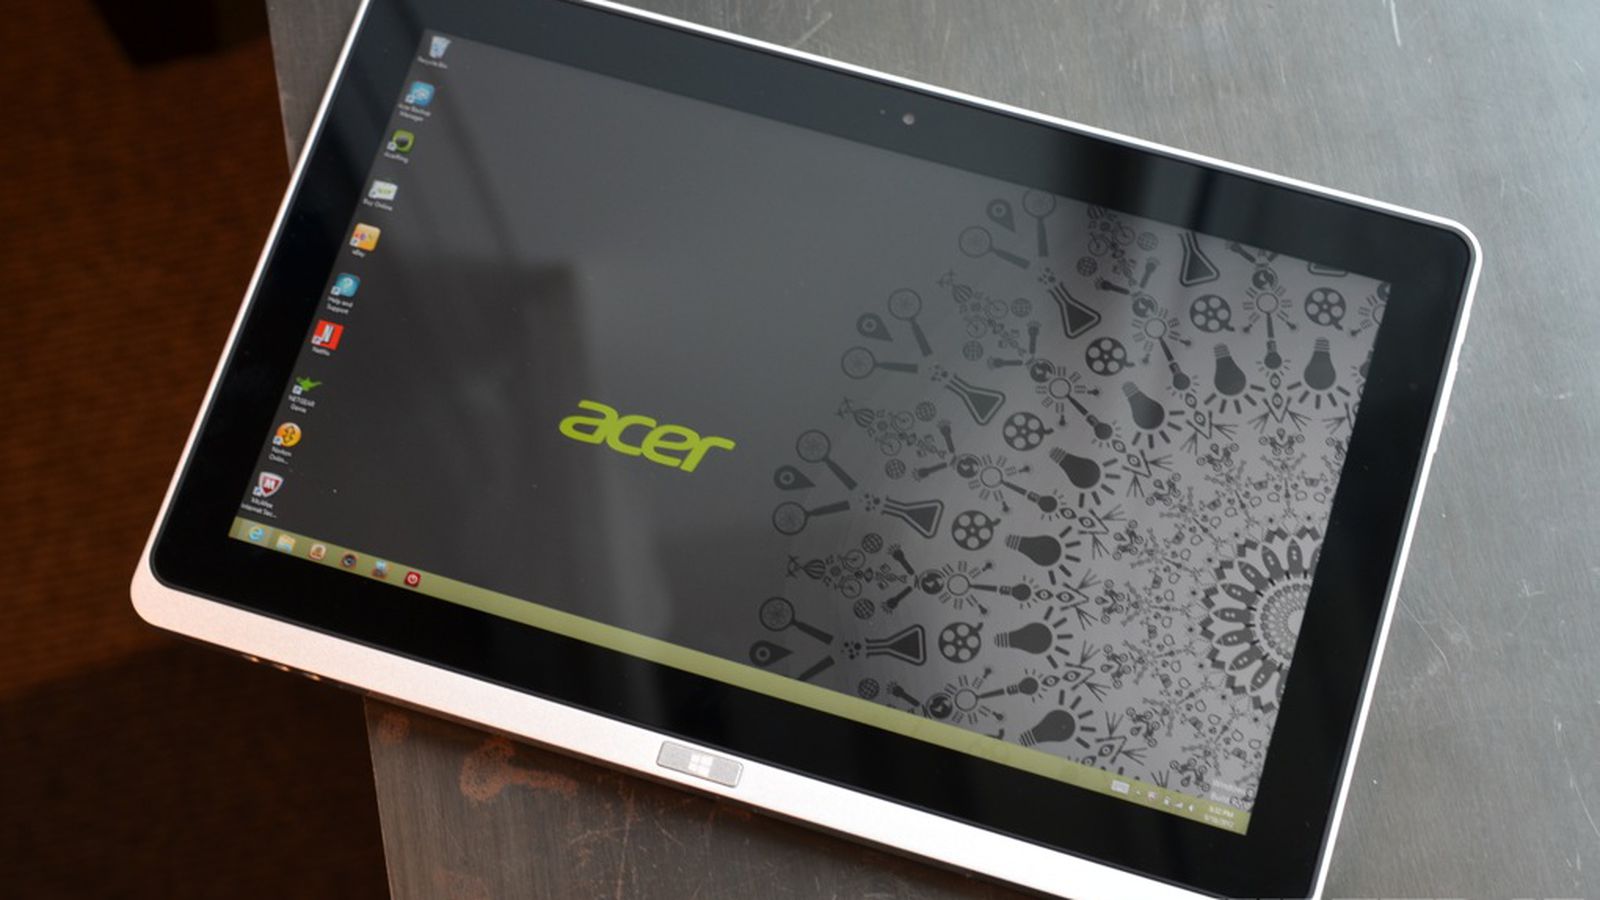 acer windows 8 tablet download